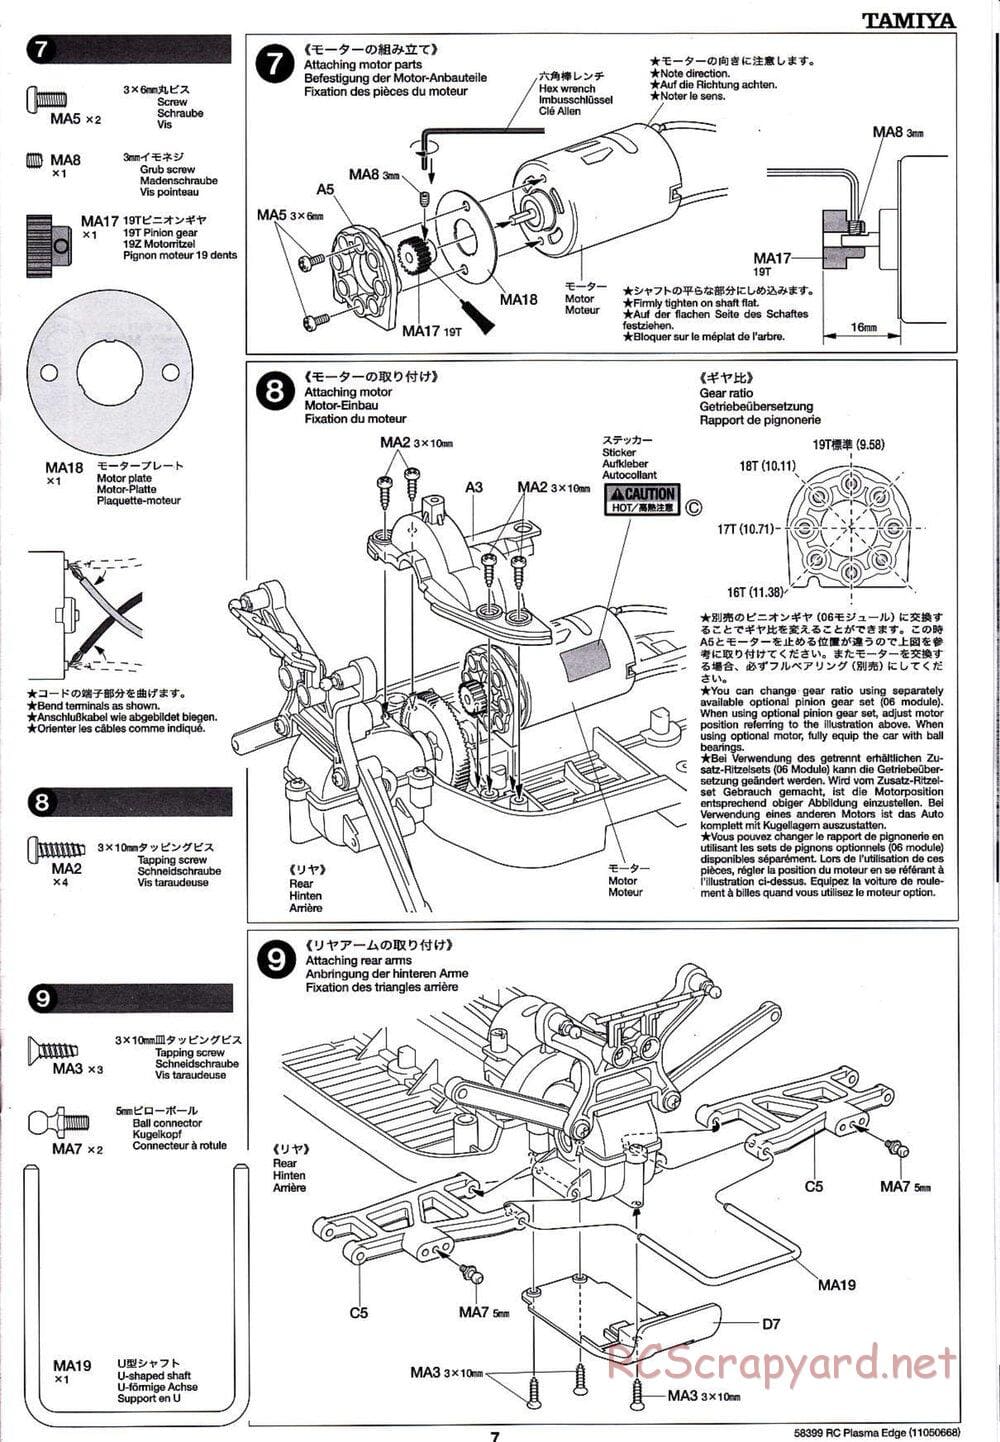 Tamiya - Plasma Edge Chassis - Manual - Page 7